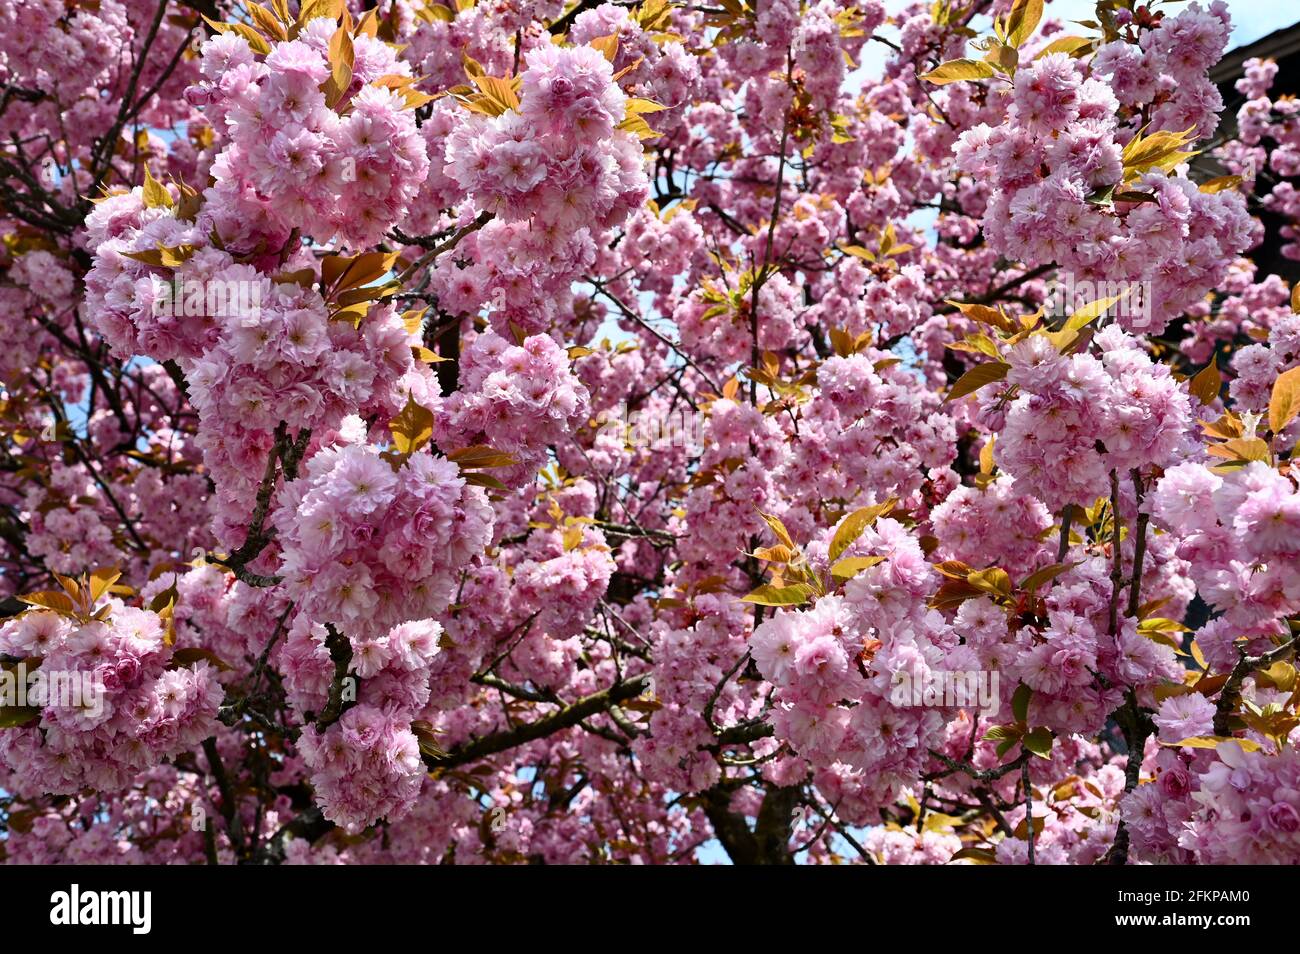 Herrlich blühender Mandelbaum im Frühling mit typisch rosa Blüten Foto Stock